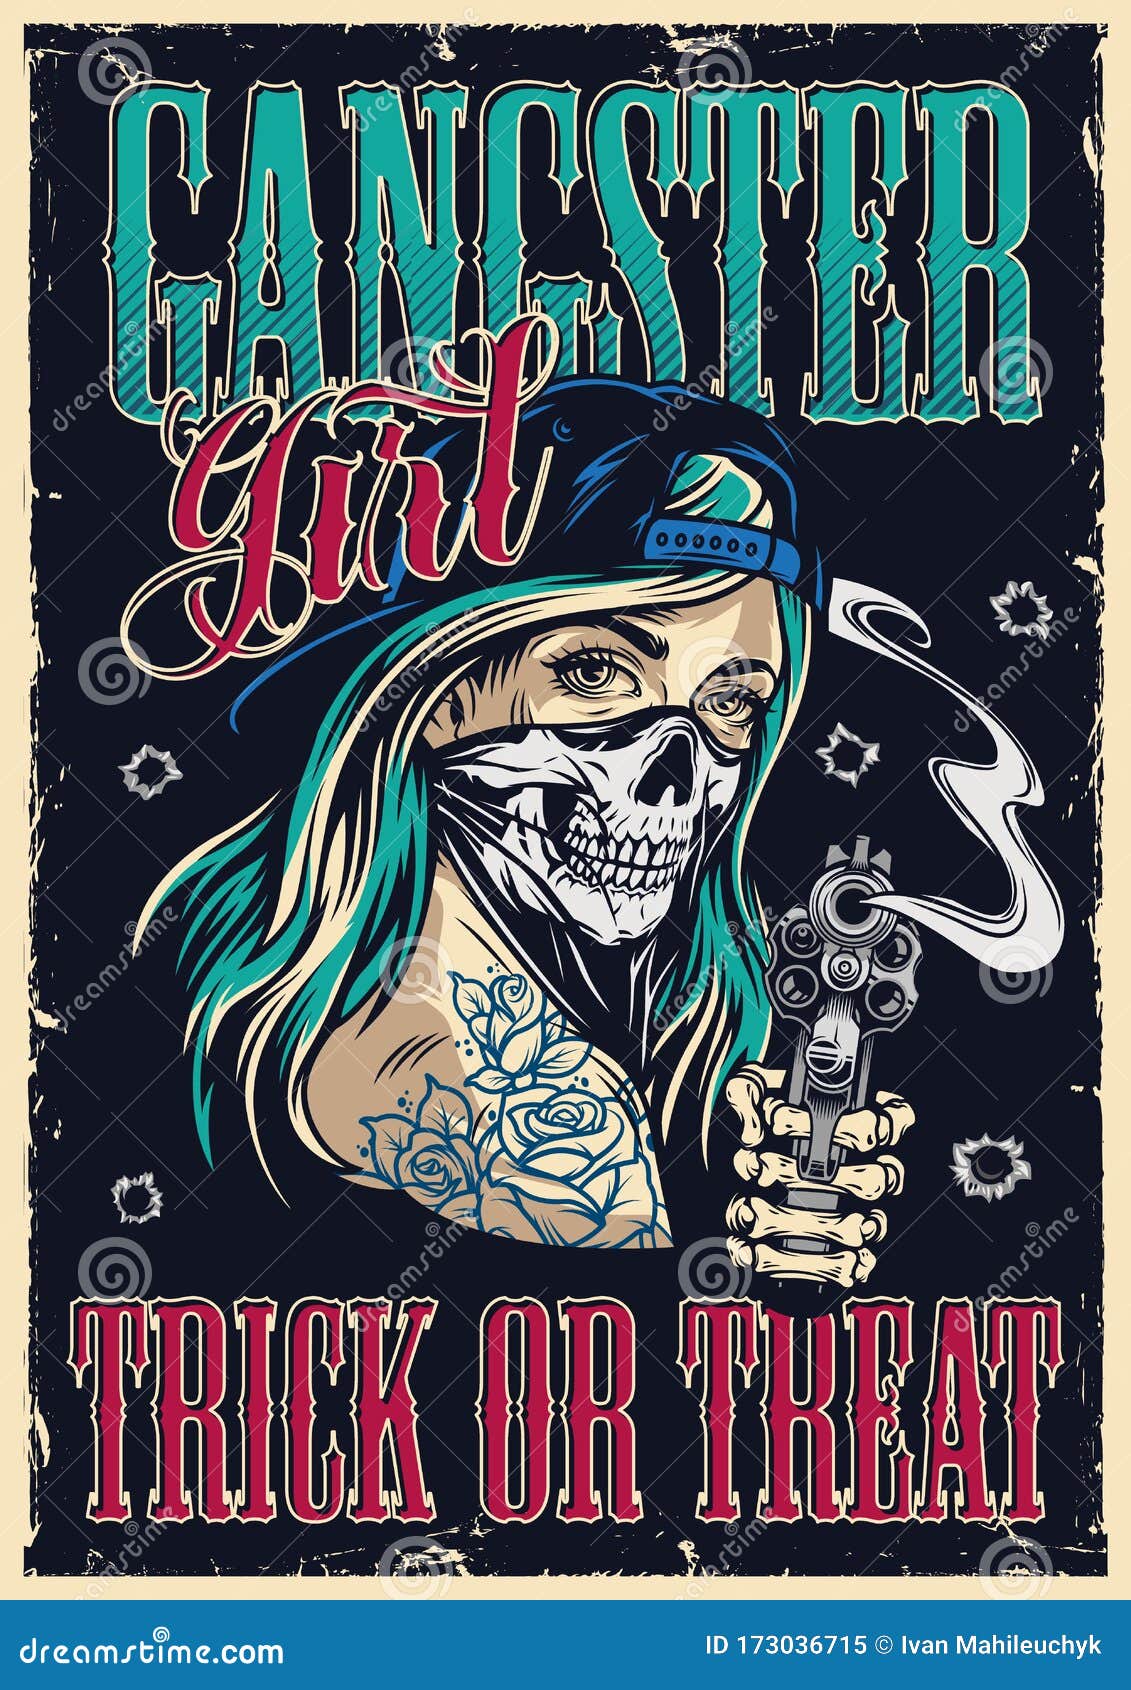 Gangster Girl Wallpapers - Top Những Hình Ảnh Đẹp